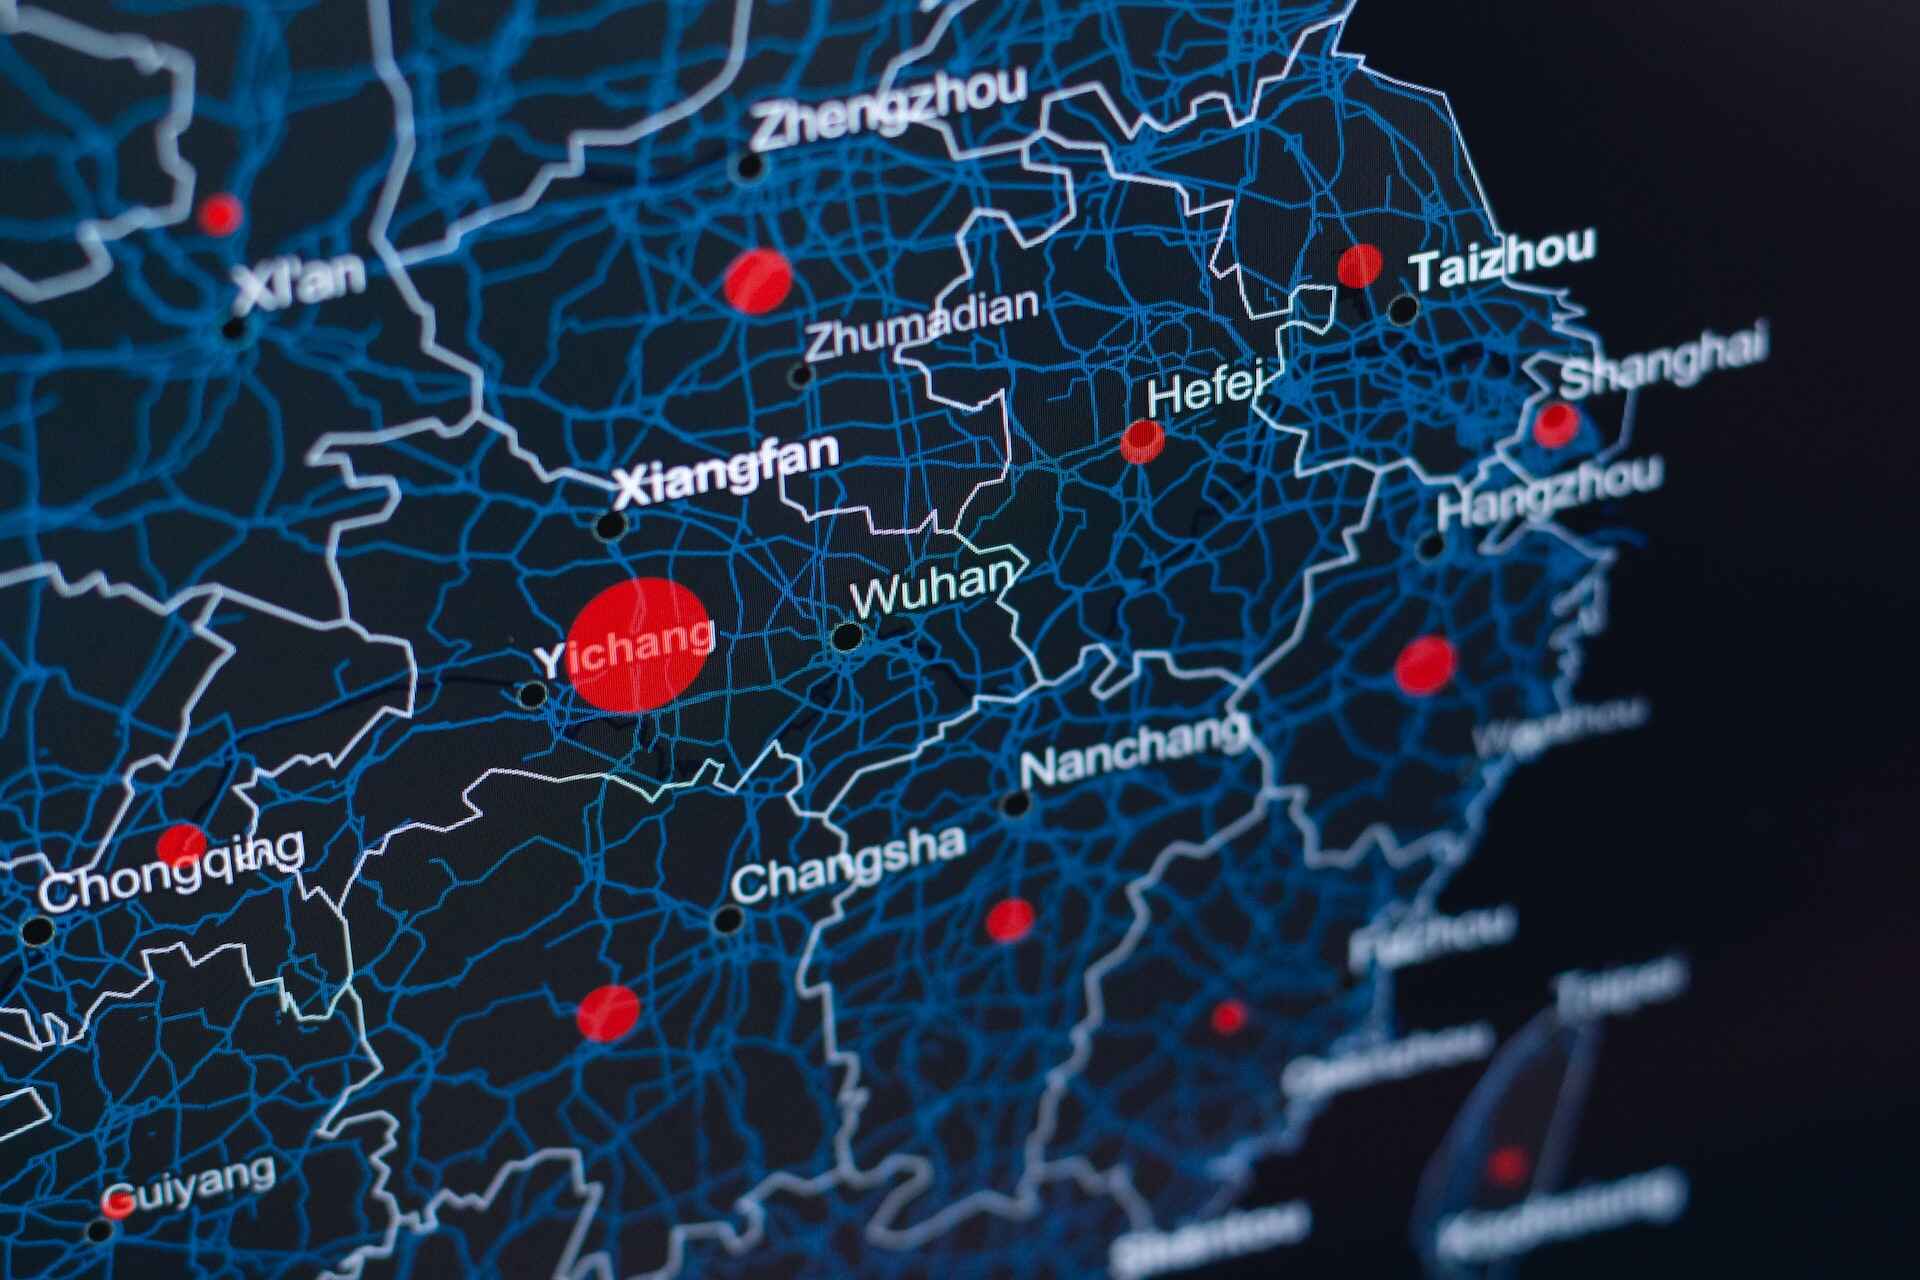 Şehirlere bağlı olarak farklı boyutlarda kırmızı daireler içeren, Batı Çin'in dijital bir haritası.